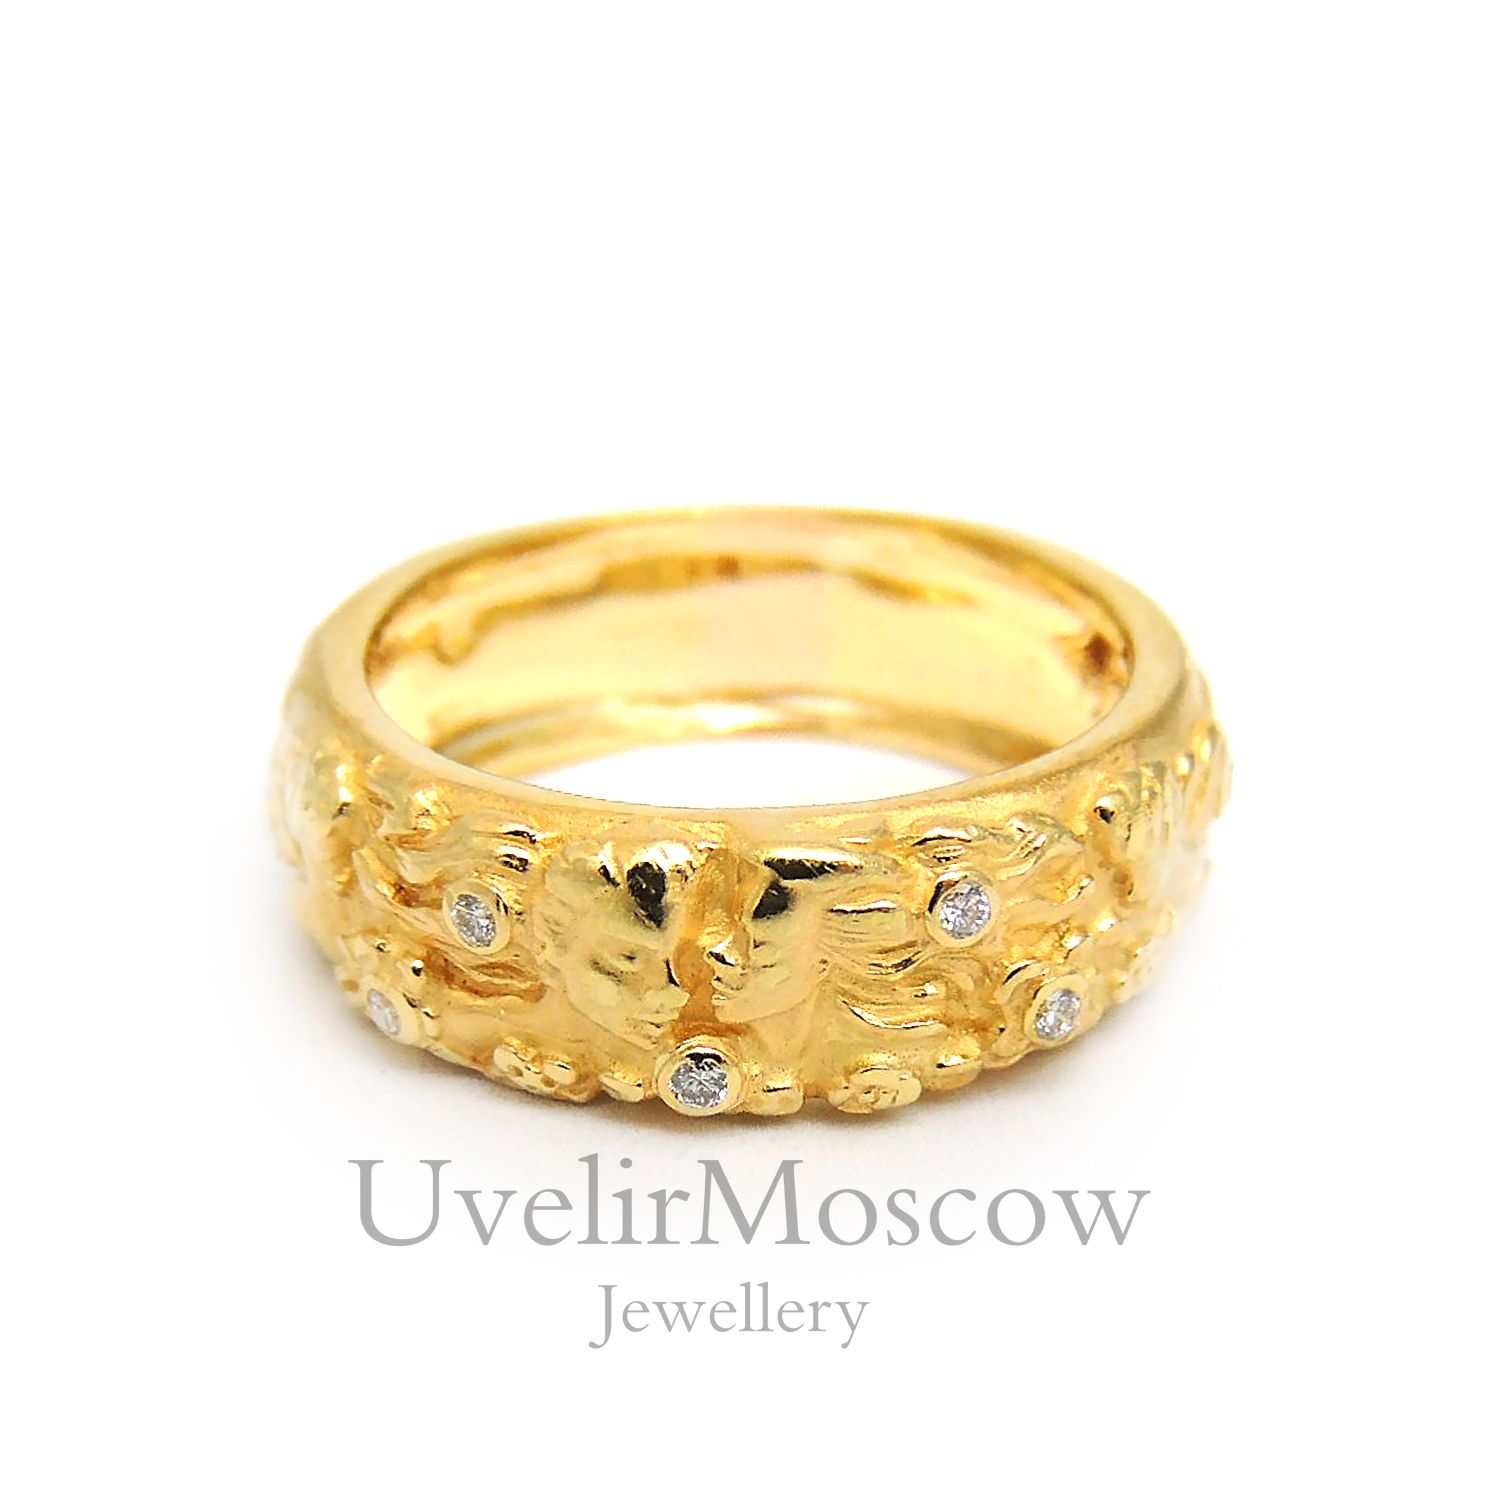  Обручальное кольцо из желтого золота с рельефным рисунком и бриллиантами